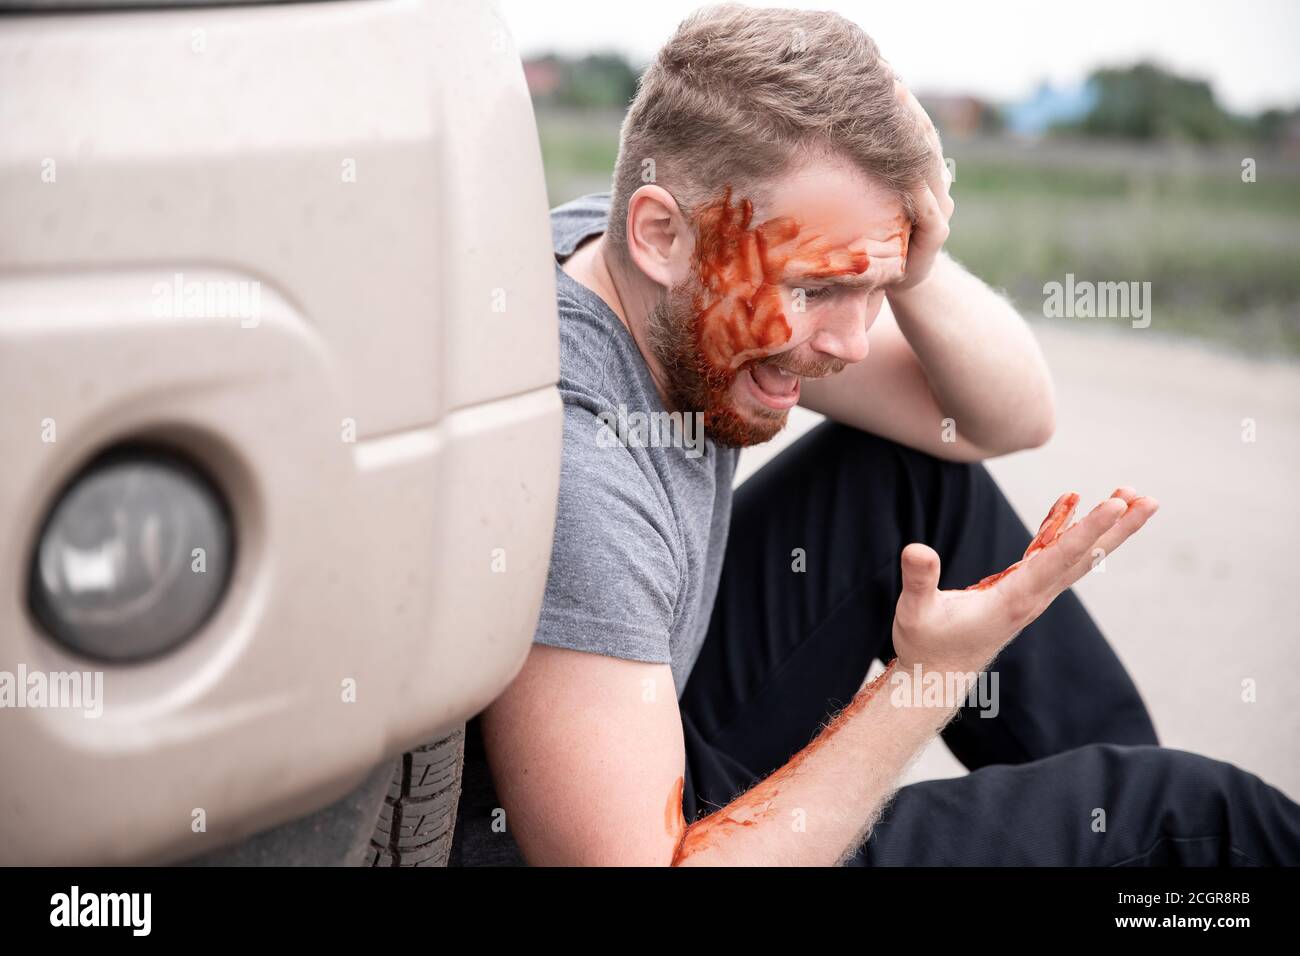 Il giovane si siede con la testa sanguinata vicino alla ruota dell'automobile, urlando e rammaricandosi atto Foto Stock